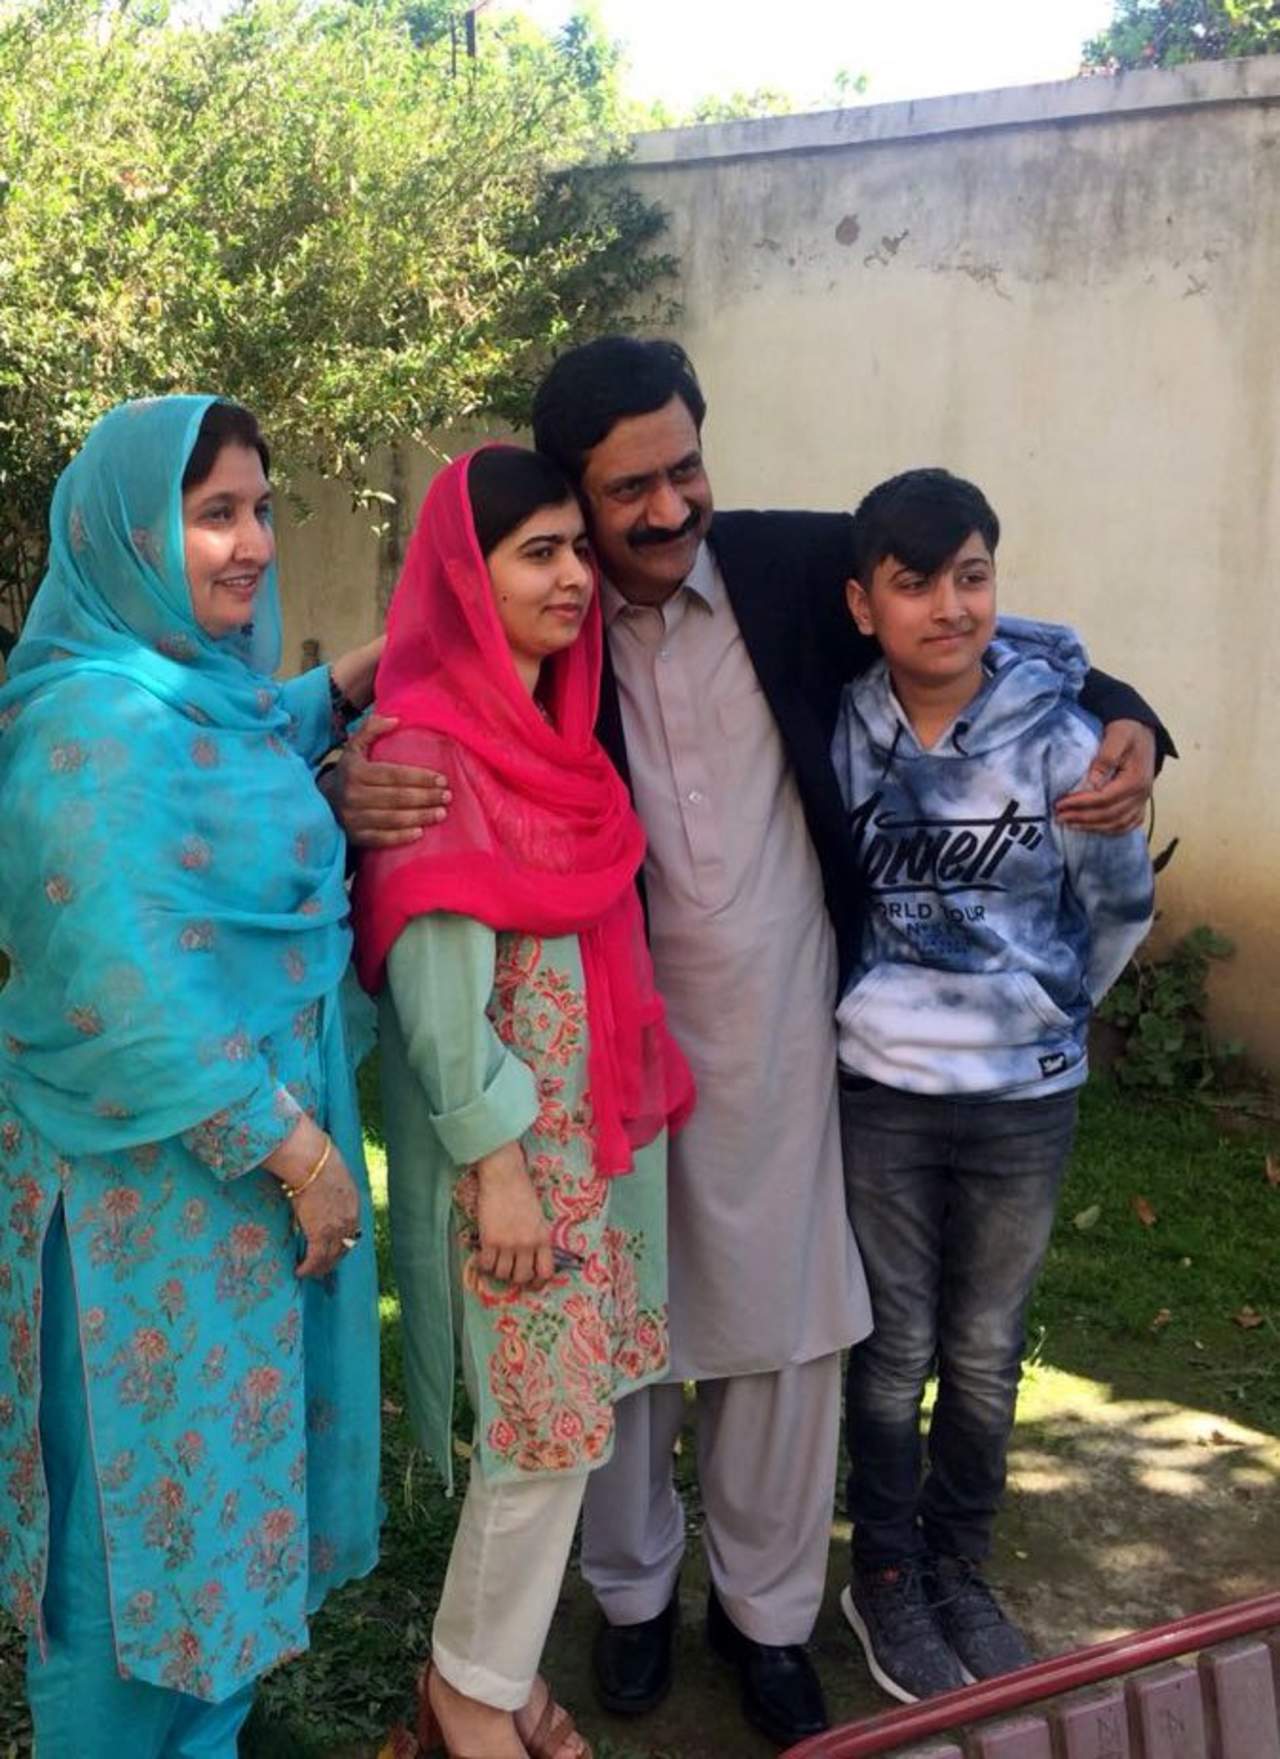 Malala Yousafzai (rosa), la joven activista paquistaní que fue atacada por talibanes y que ganó el Premio Nobel de la Paz, dejó Pakistán el lunes concluyendo su primera visita al país desde el ataque que sufrió en el 2012. (ARCHIVO)